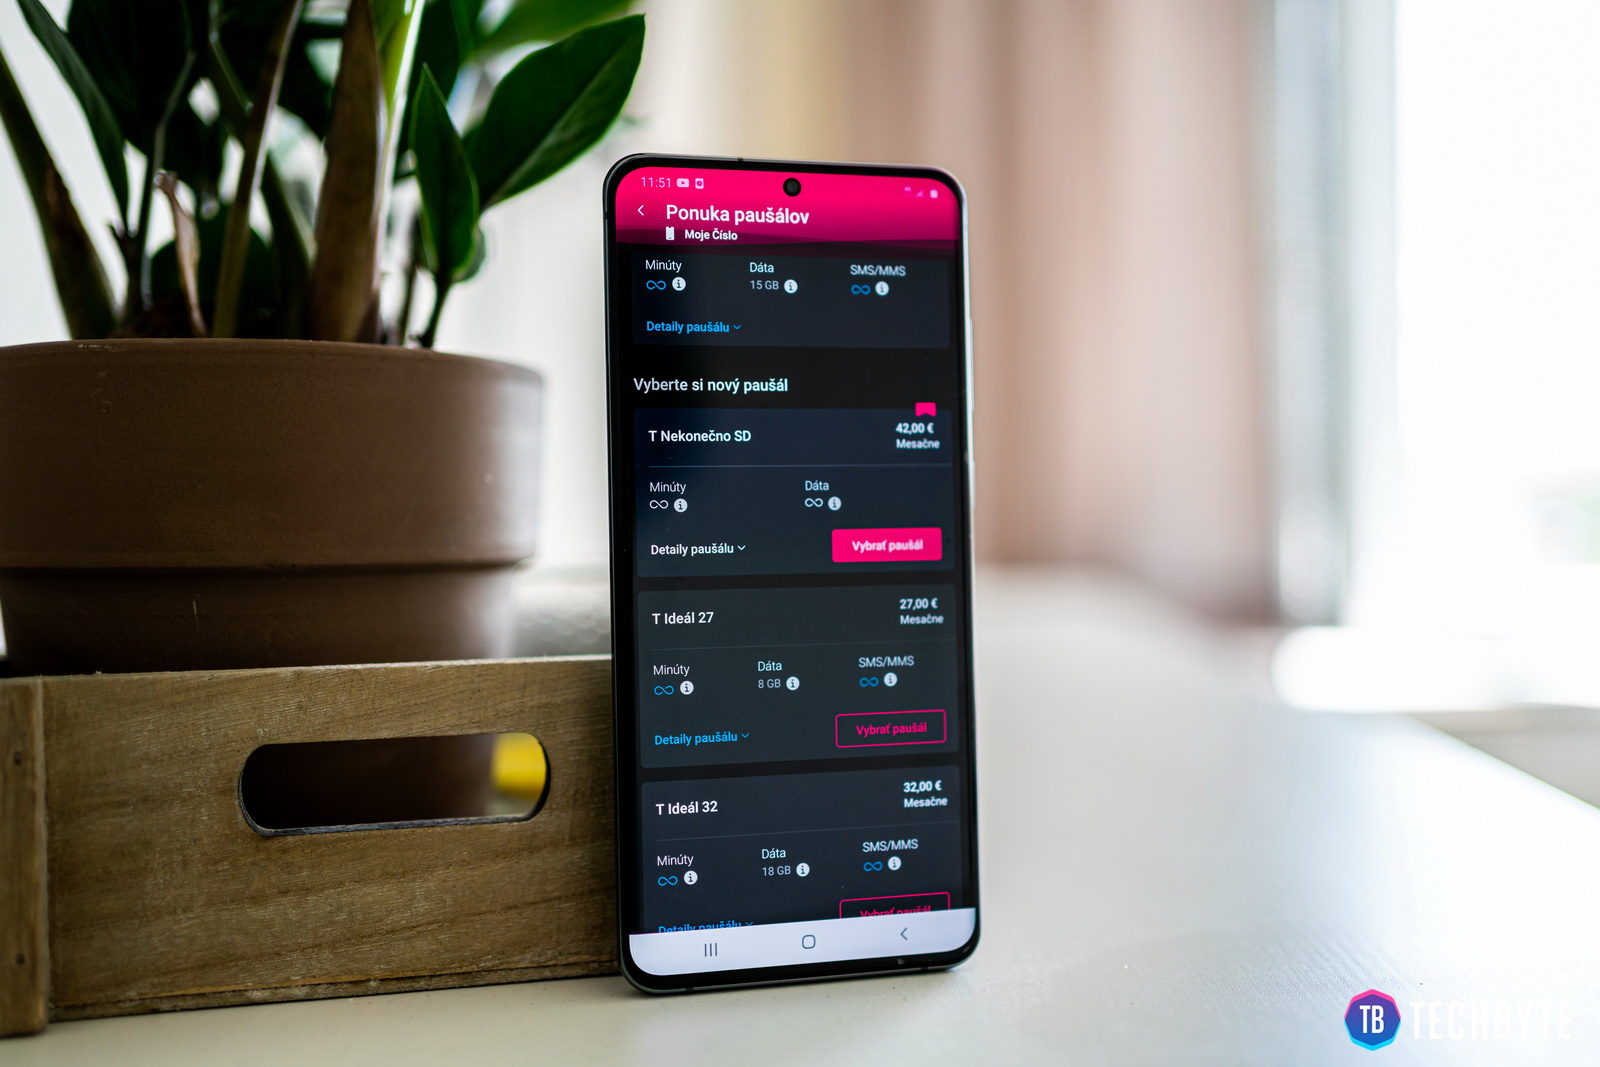 قامت Telekom بتحديث التطبيق: تصميم جديد + إمكانية تغيير السعر الثابت مباشرة في التطبيق 3